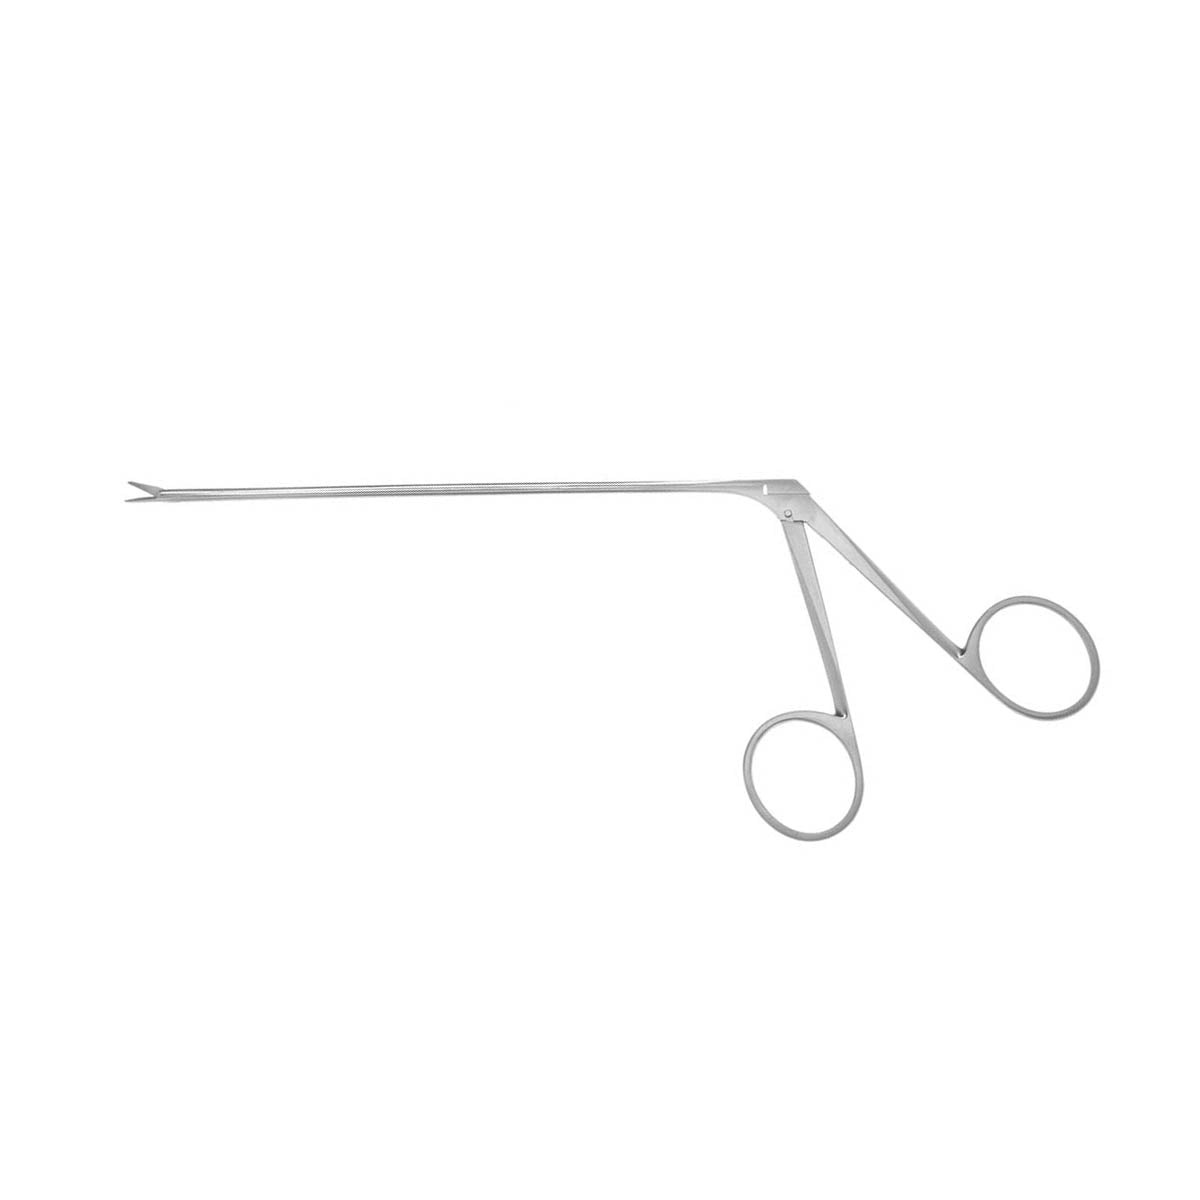 Jannetta Kurze Dissector Scissors curved left